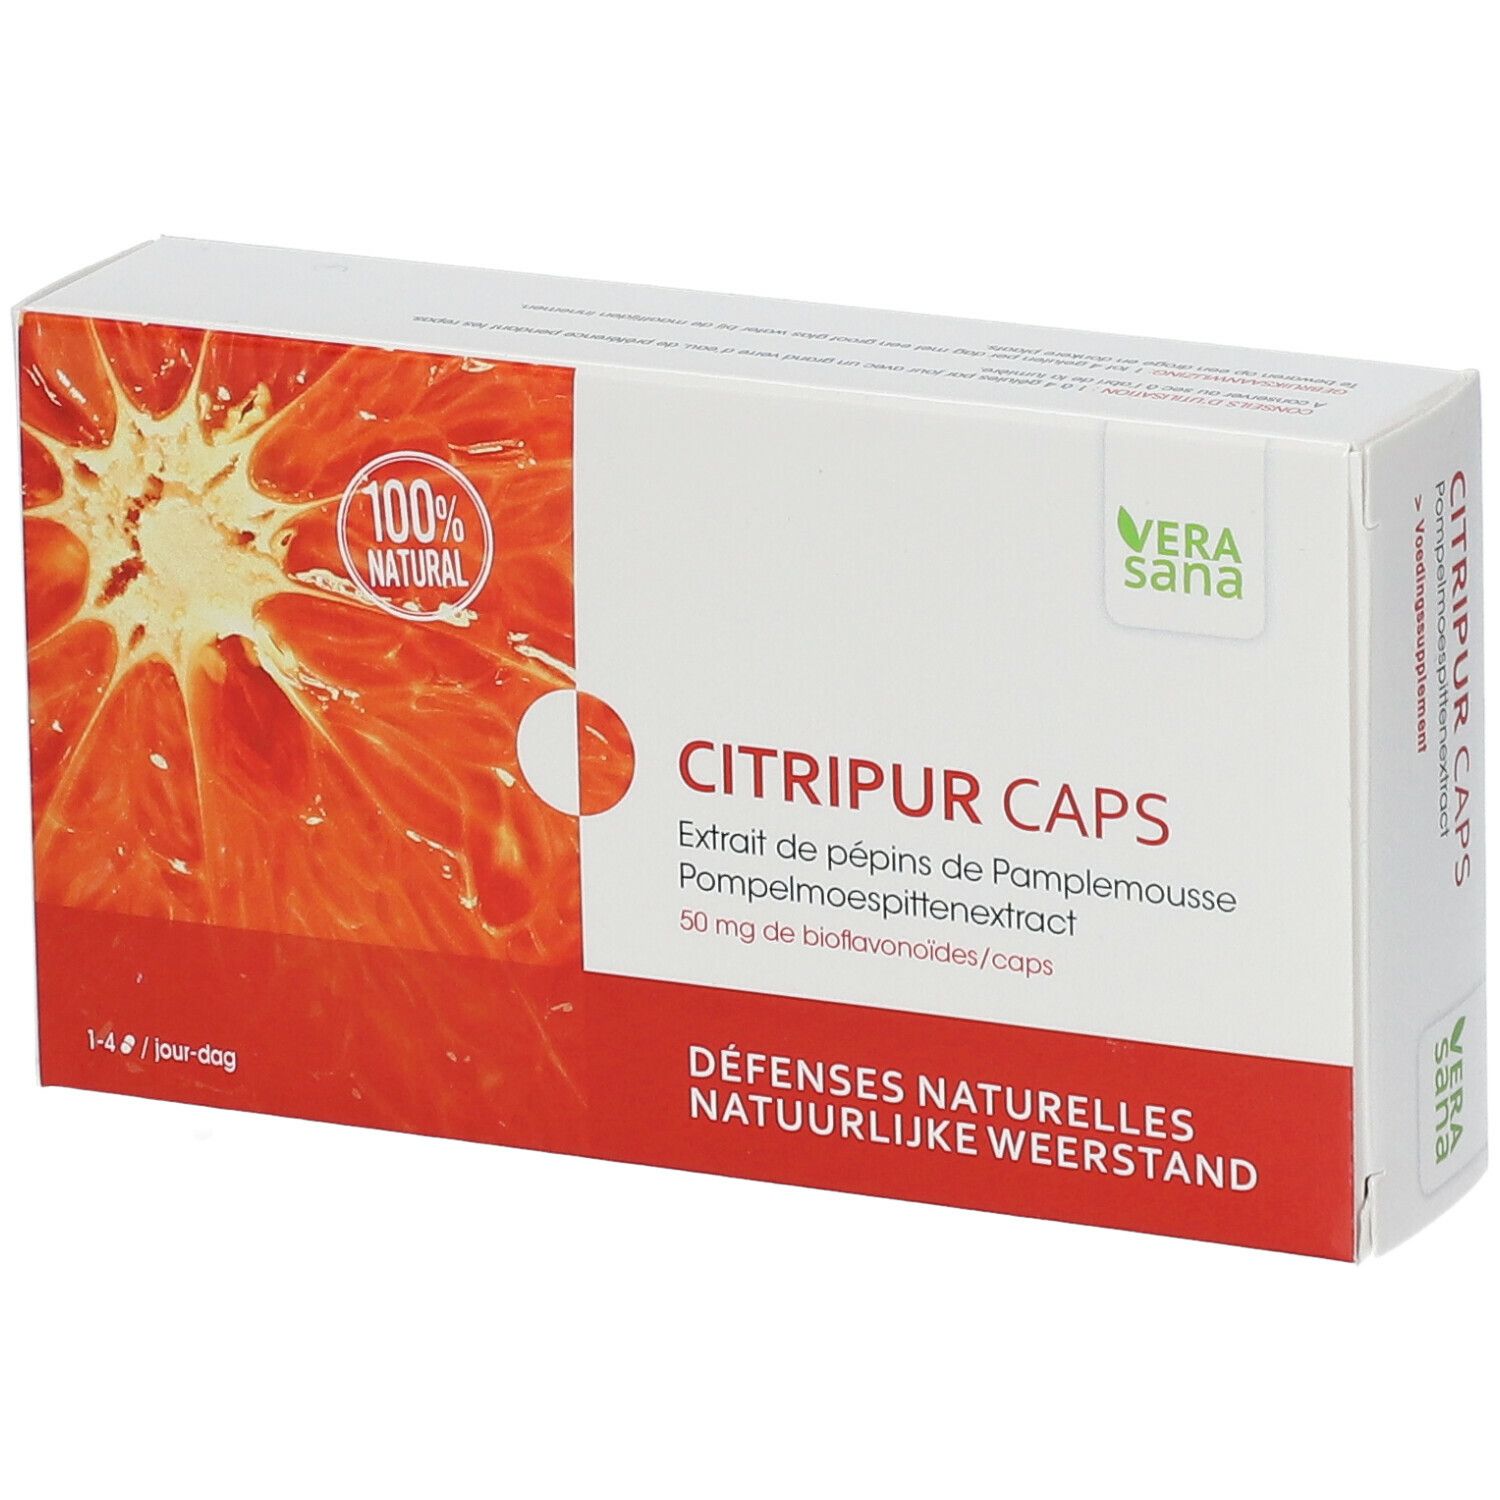 Image of CITRIPUS CAPS